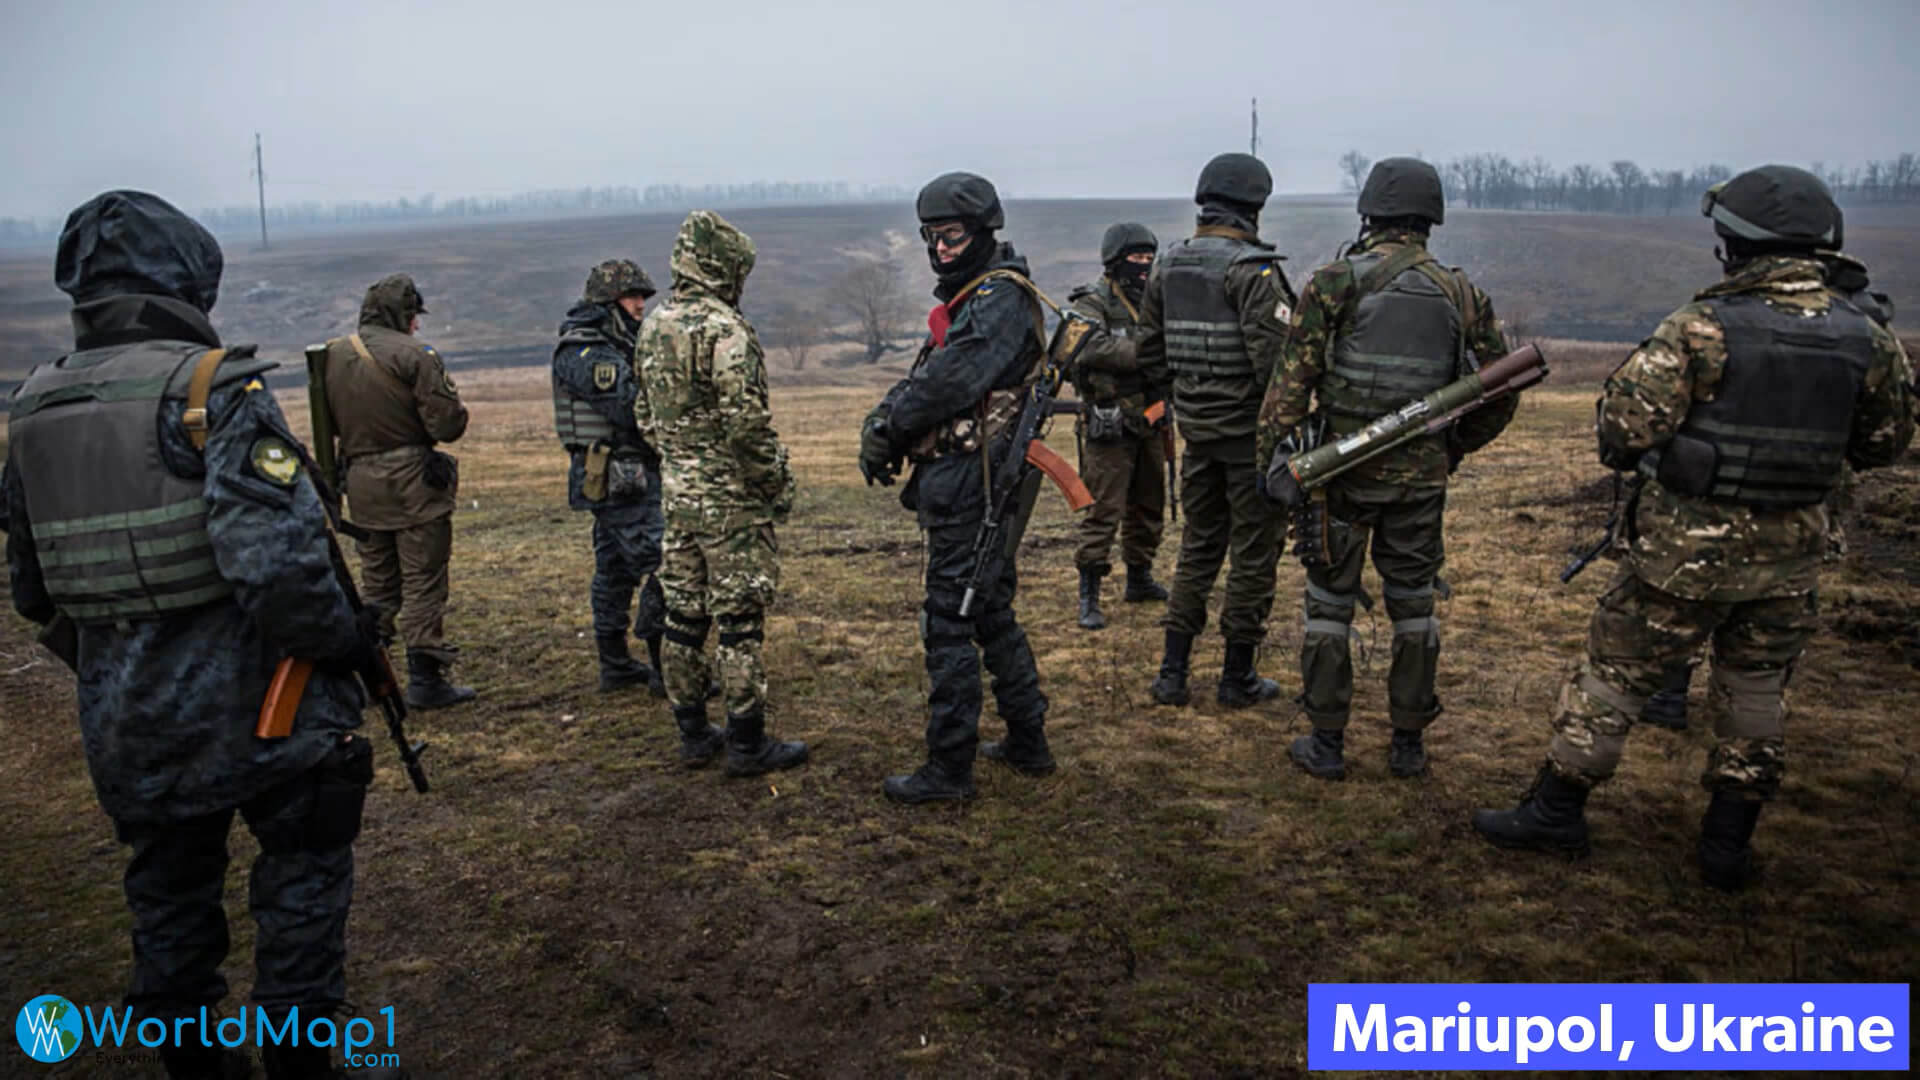 Conflit of Mariupol in Ukraine